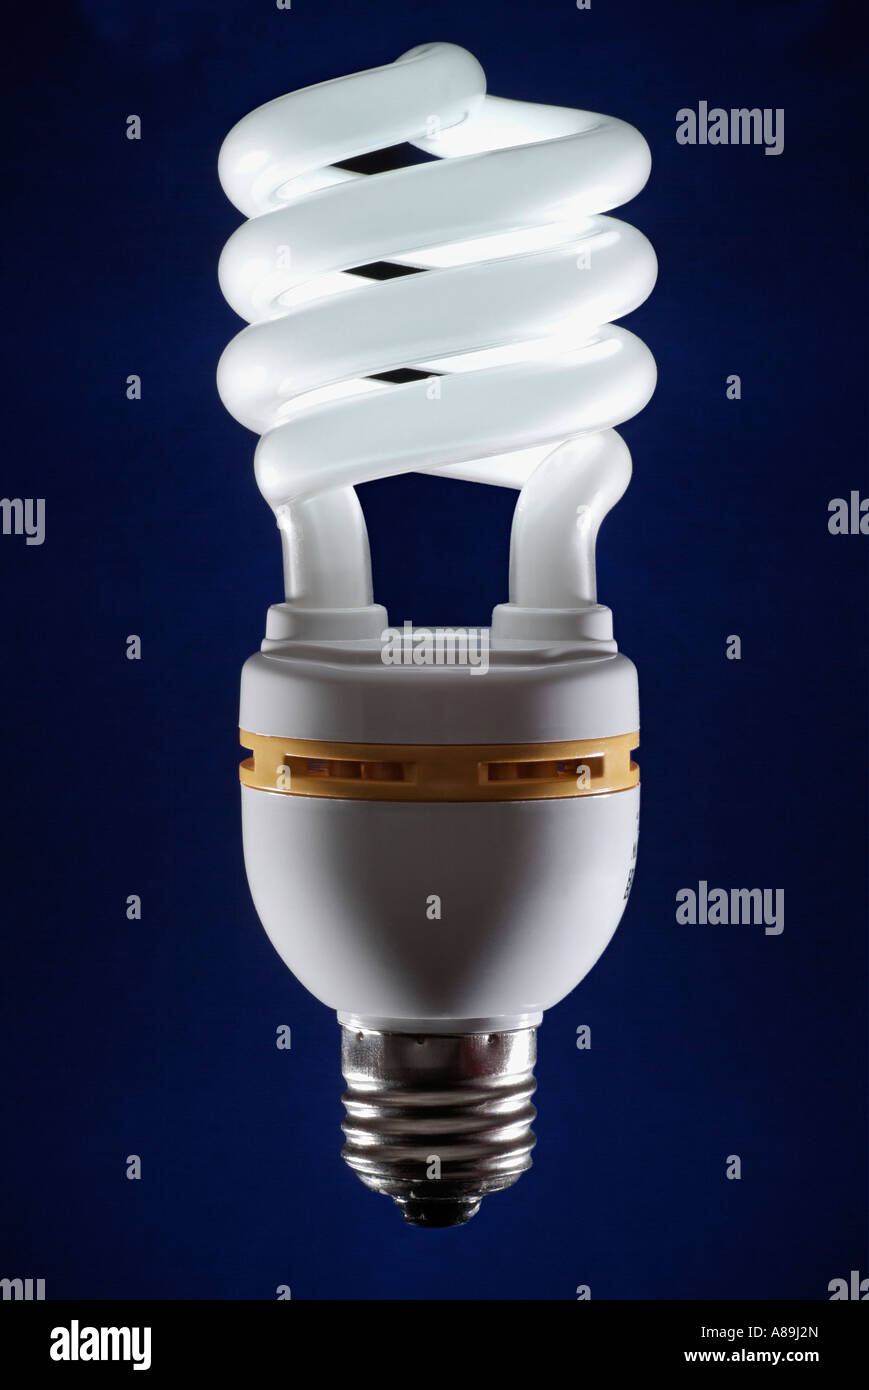 Ampoule à économie d'énergie une alternative respectueuse de l'environnement aux ampoules traditionnelles Banque D'Images